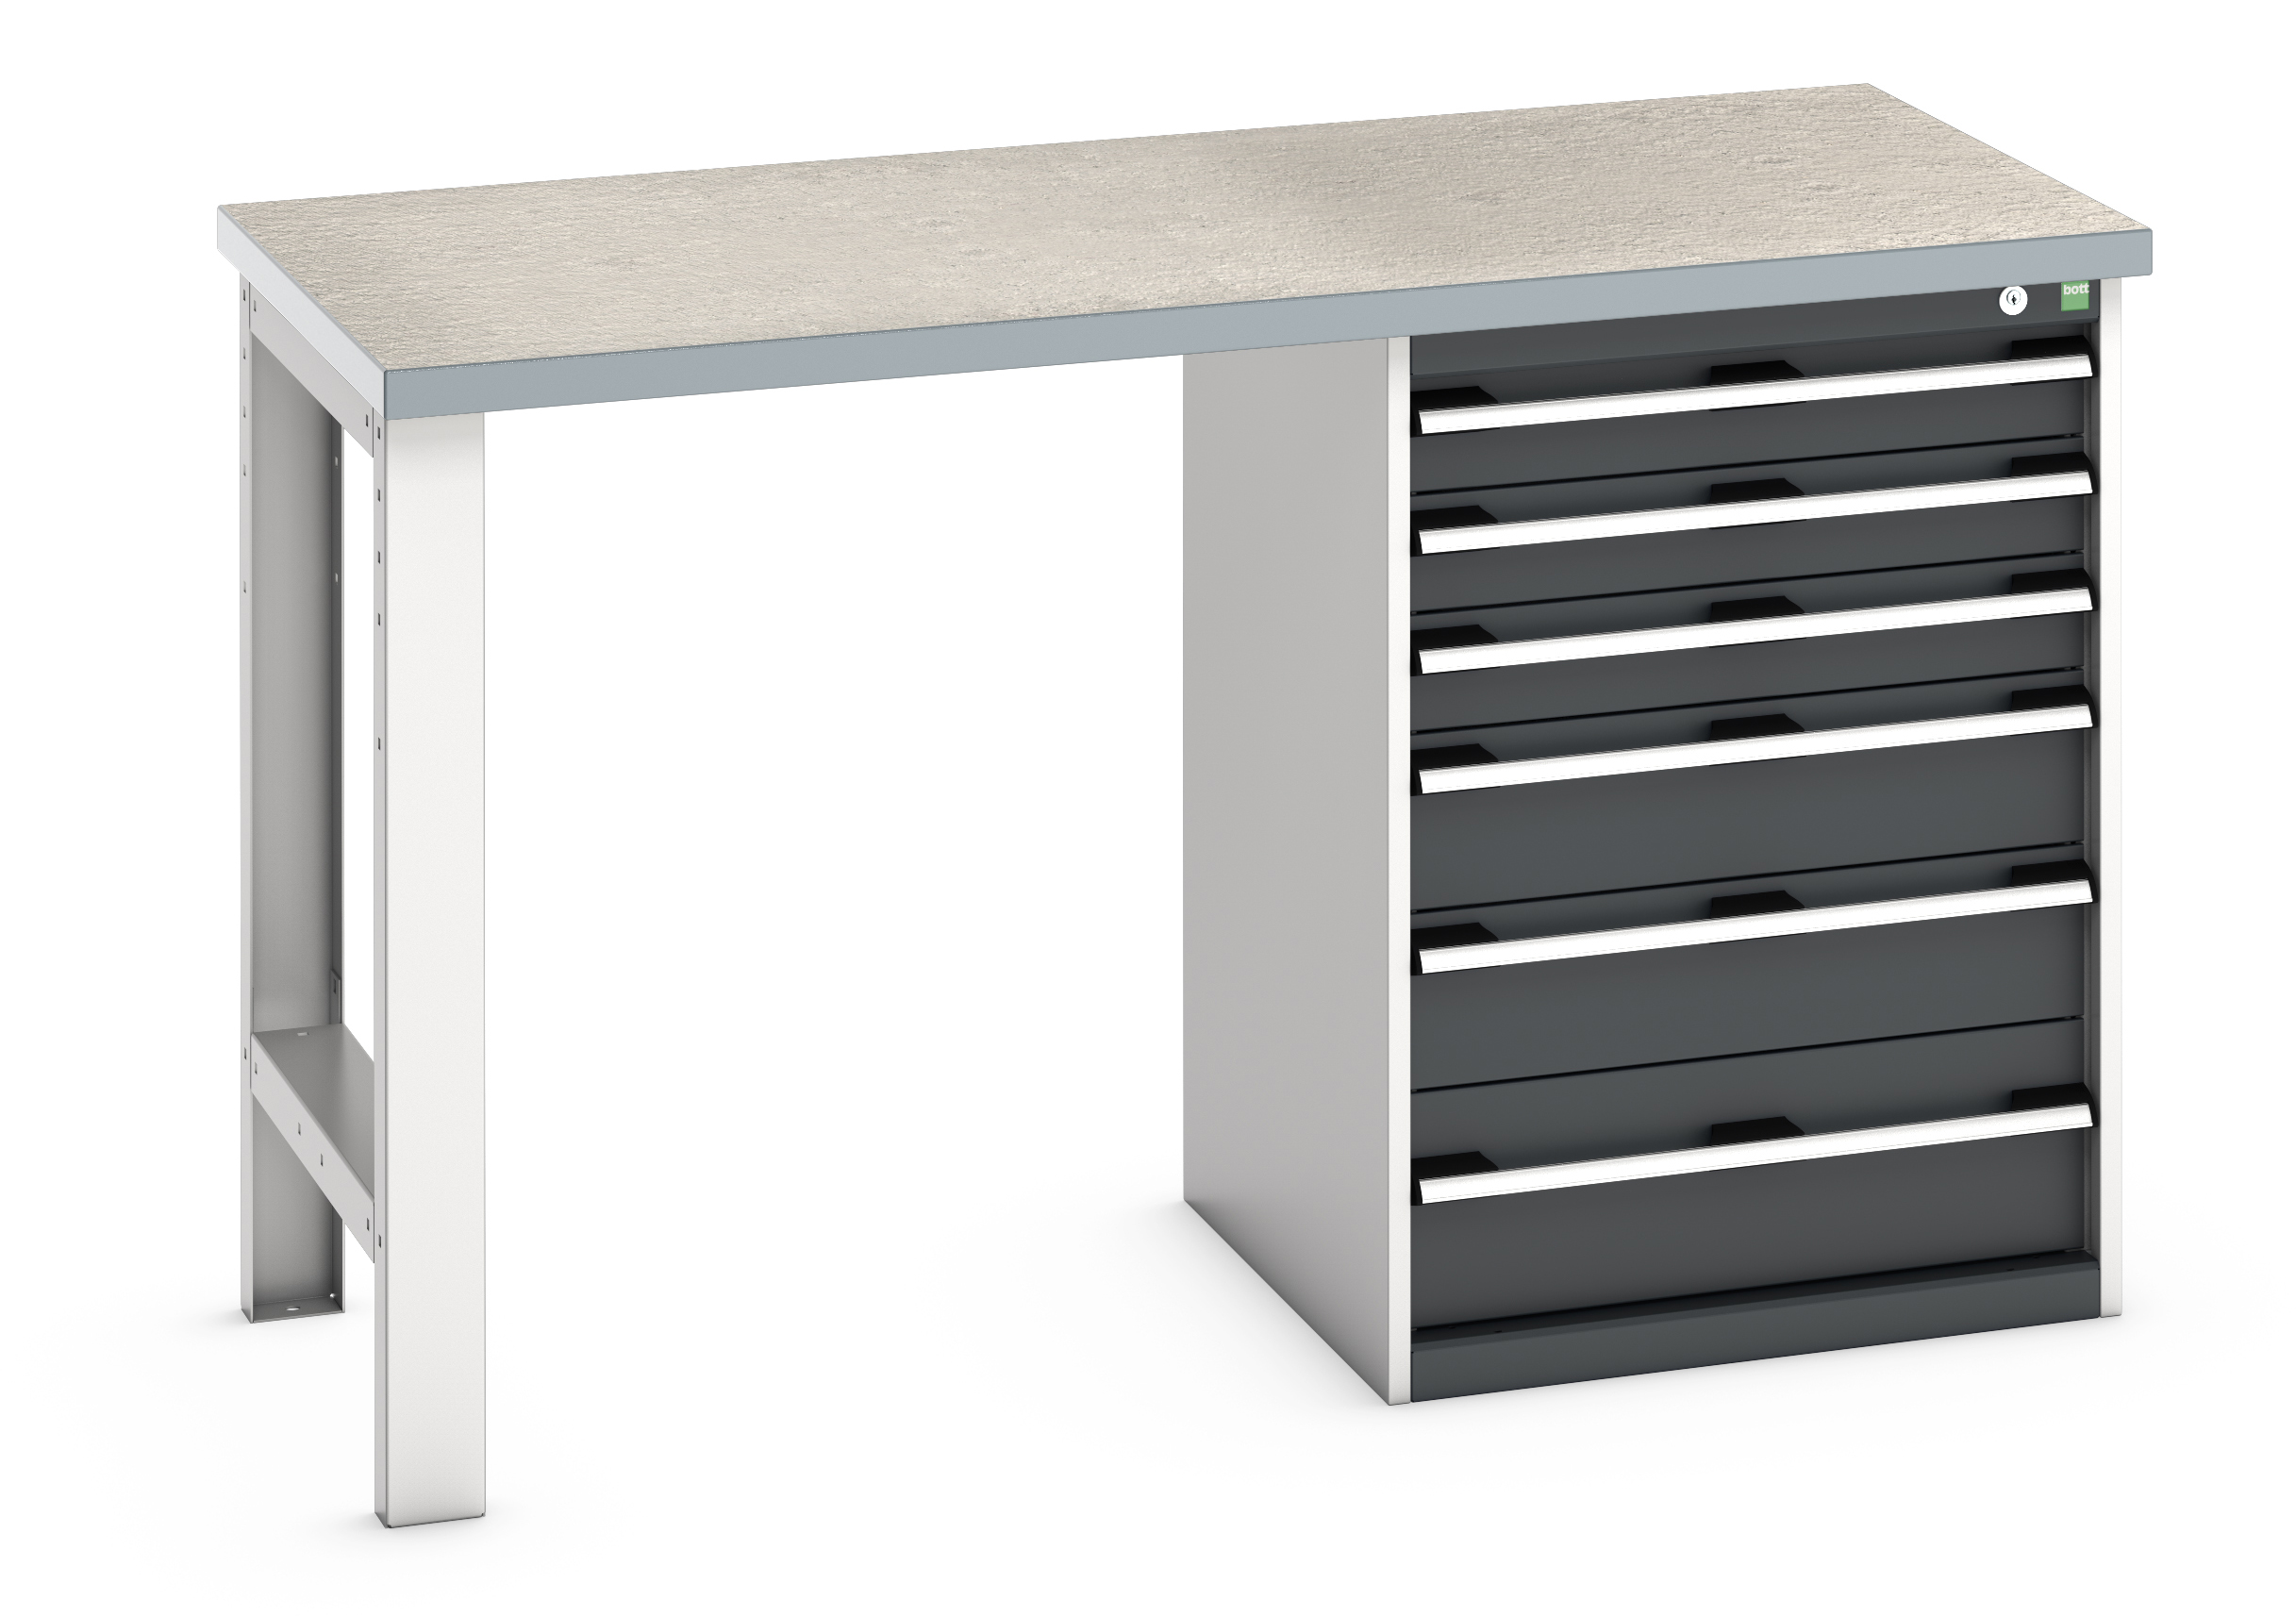 Bott Cubio Pedestal Bench With 6 Drawer Cabinet - 41003493.19V